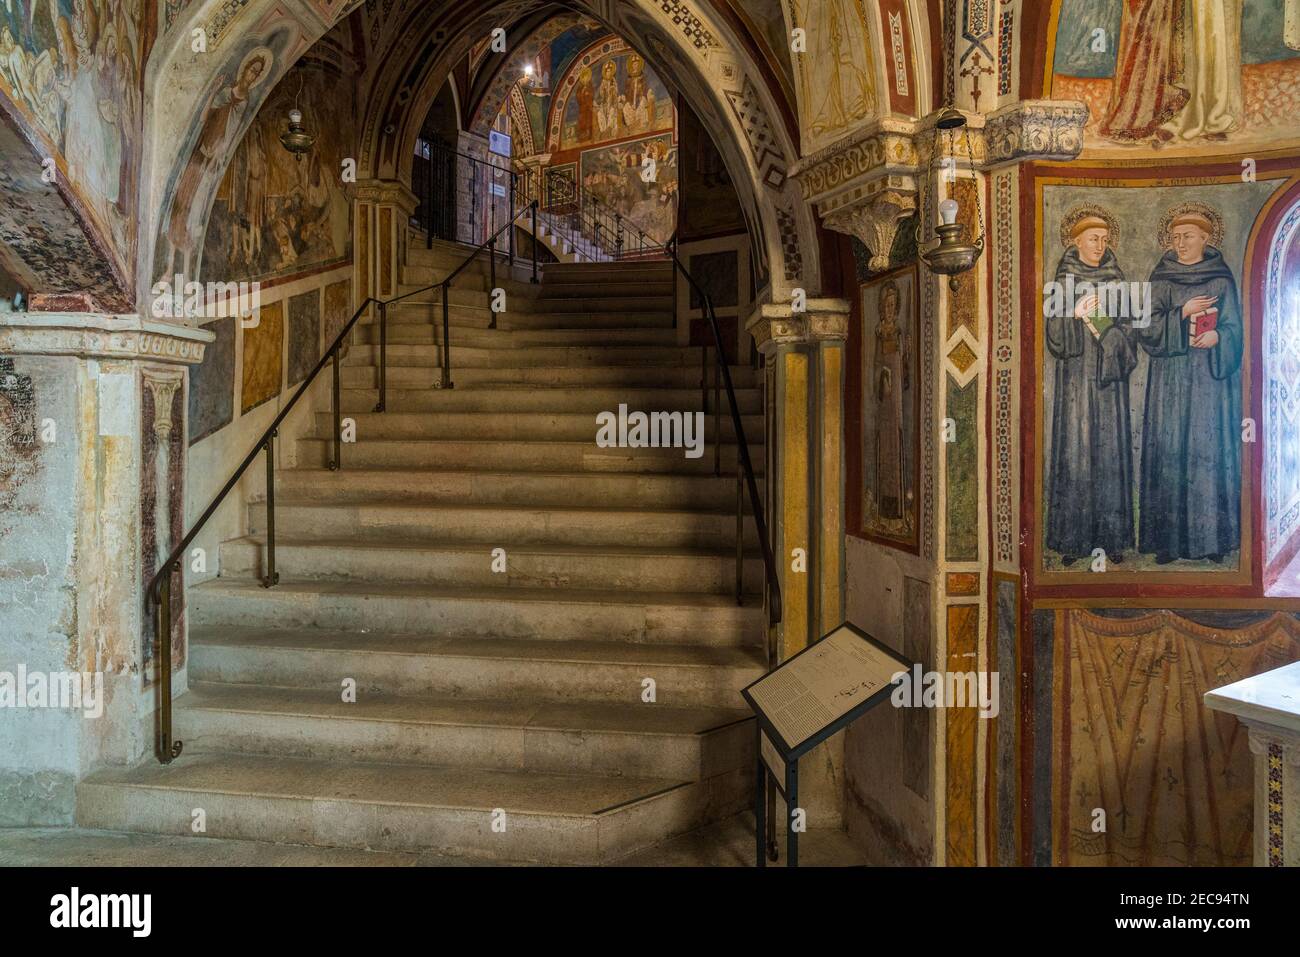 Les magnifiques fresques à l'intérieur du monastère de la grotte Sacrée (Sacro Speco) de Saint Benoît à Subiaco, province de Rome, Latium, Italie. Banque D'Images